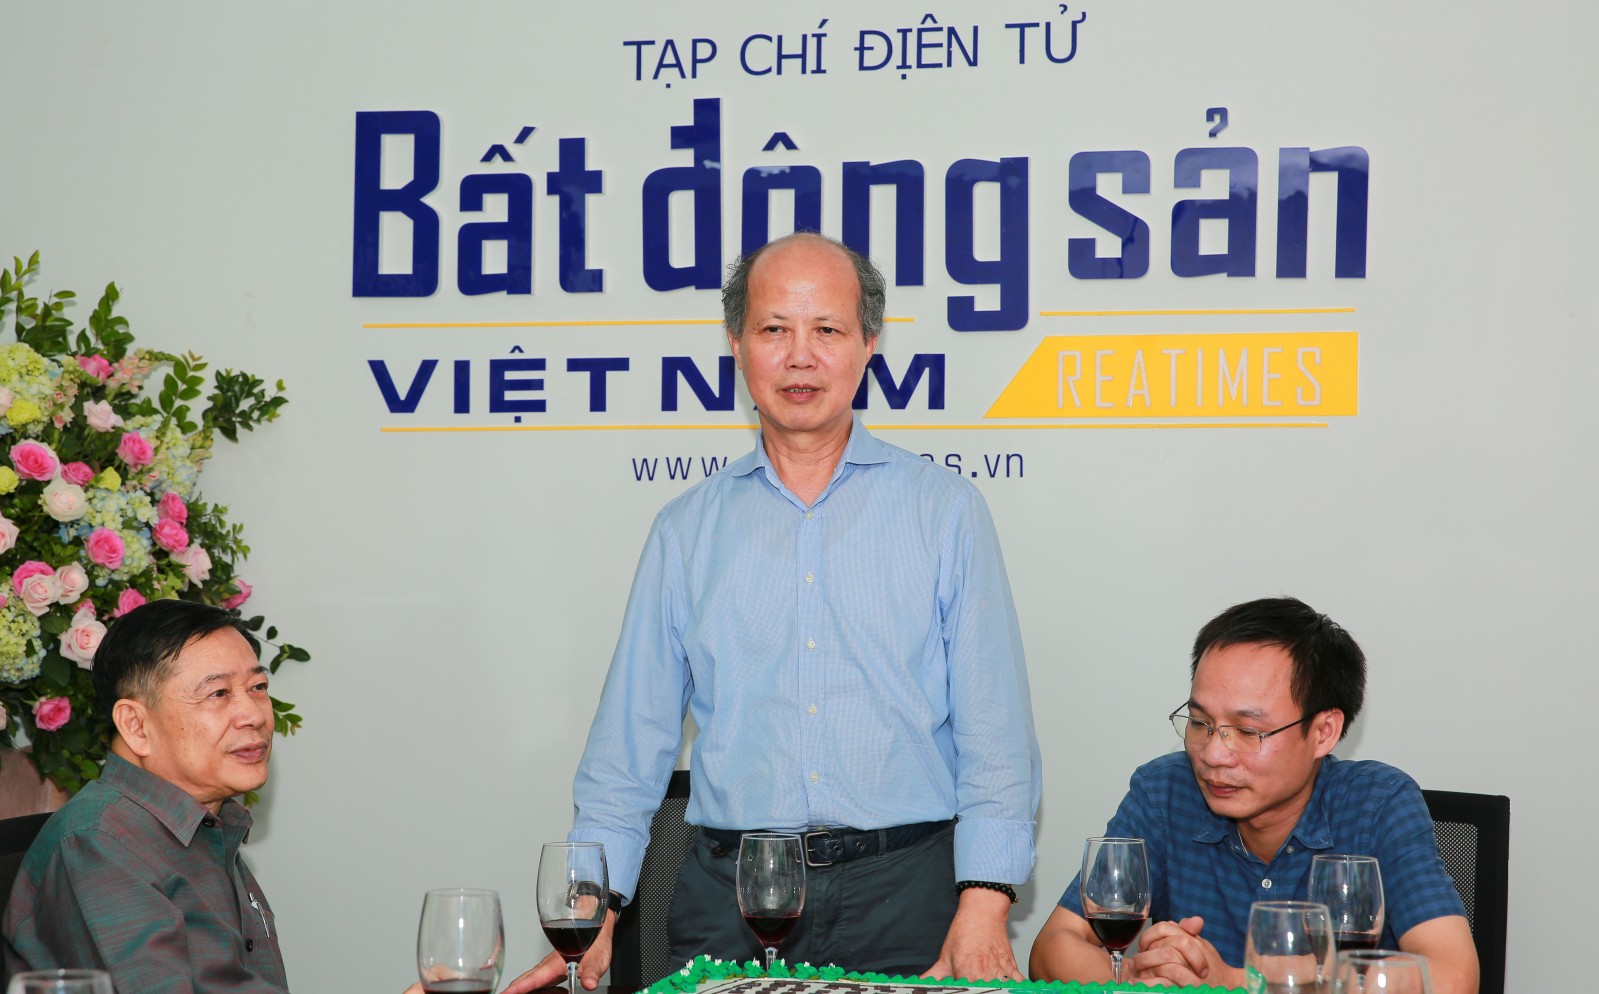 Chủ tịch Hiệp hội BĐS Việt Nam tin tưởng Reatimes sẽ tiếp tục phát triển mạnh mẽ